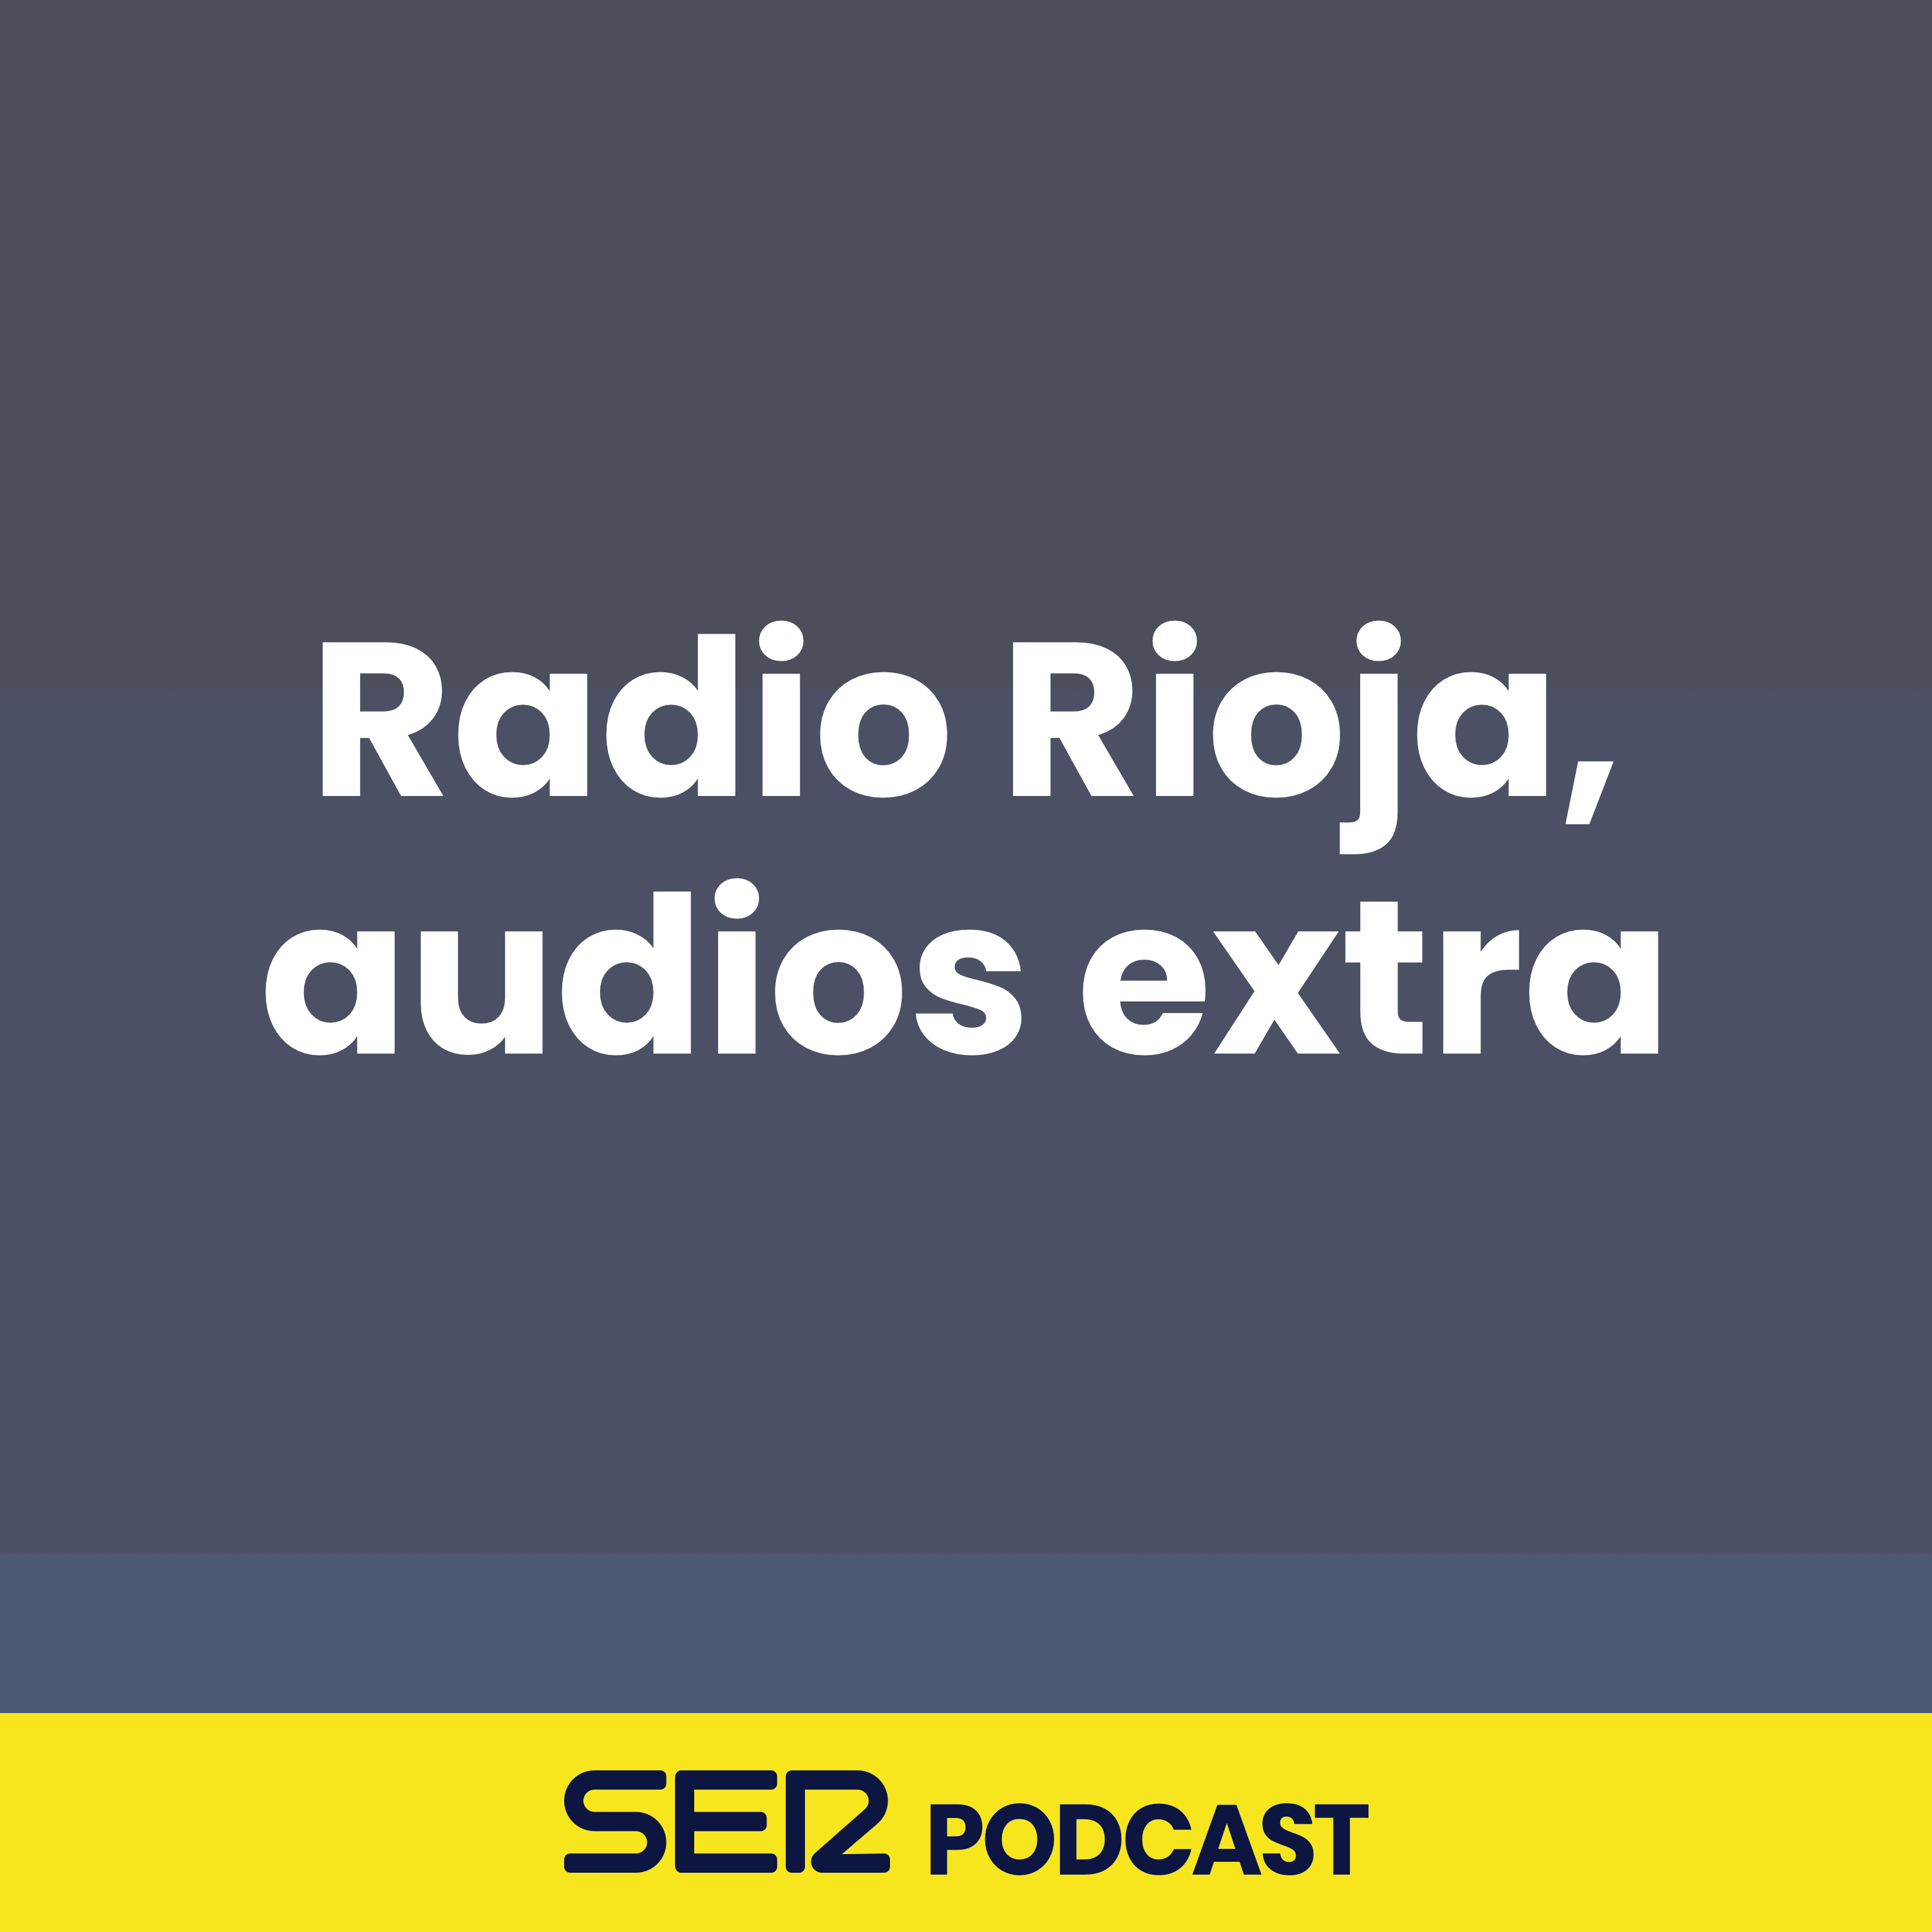 Radio Rioja, audios extra